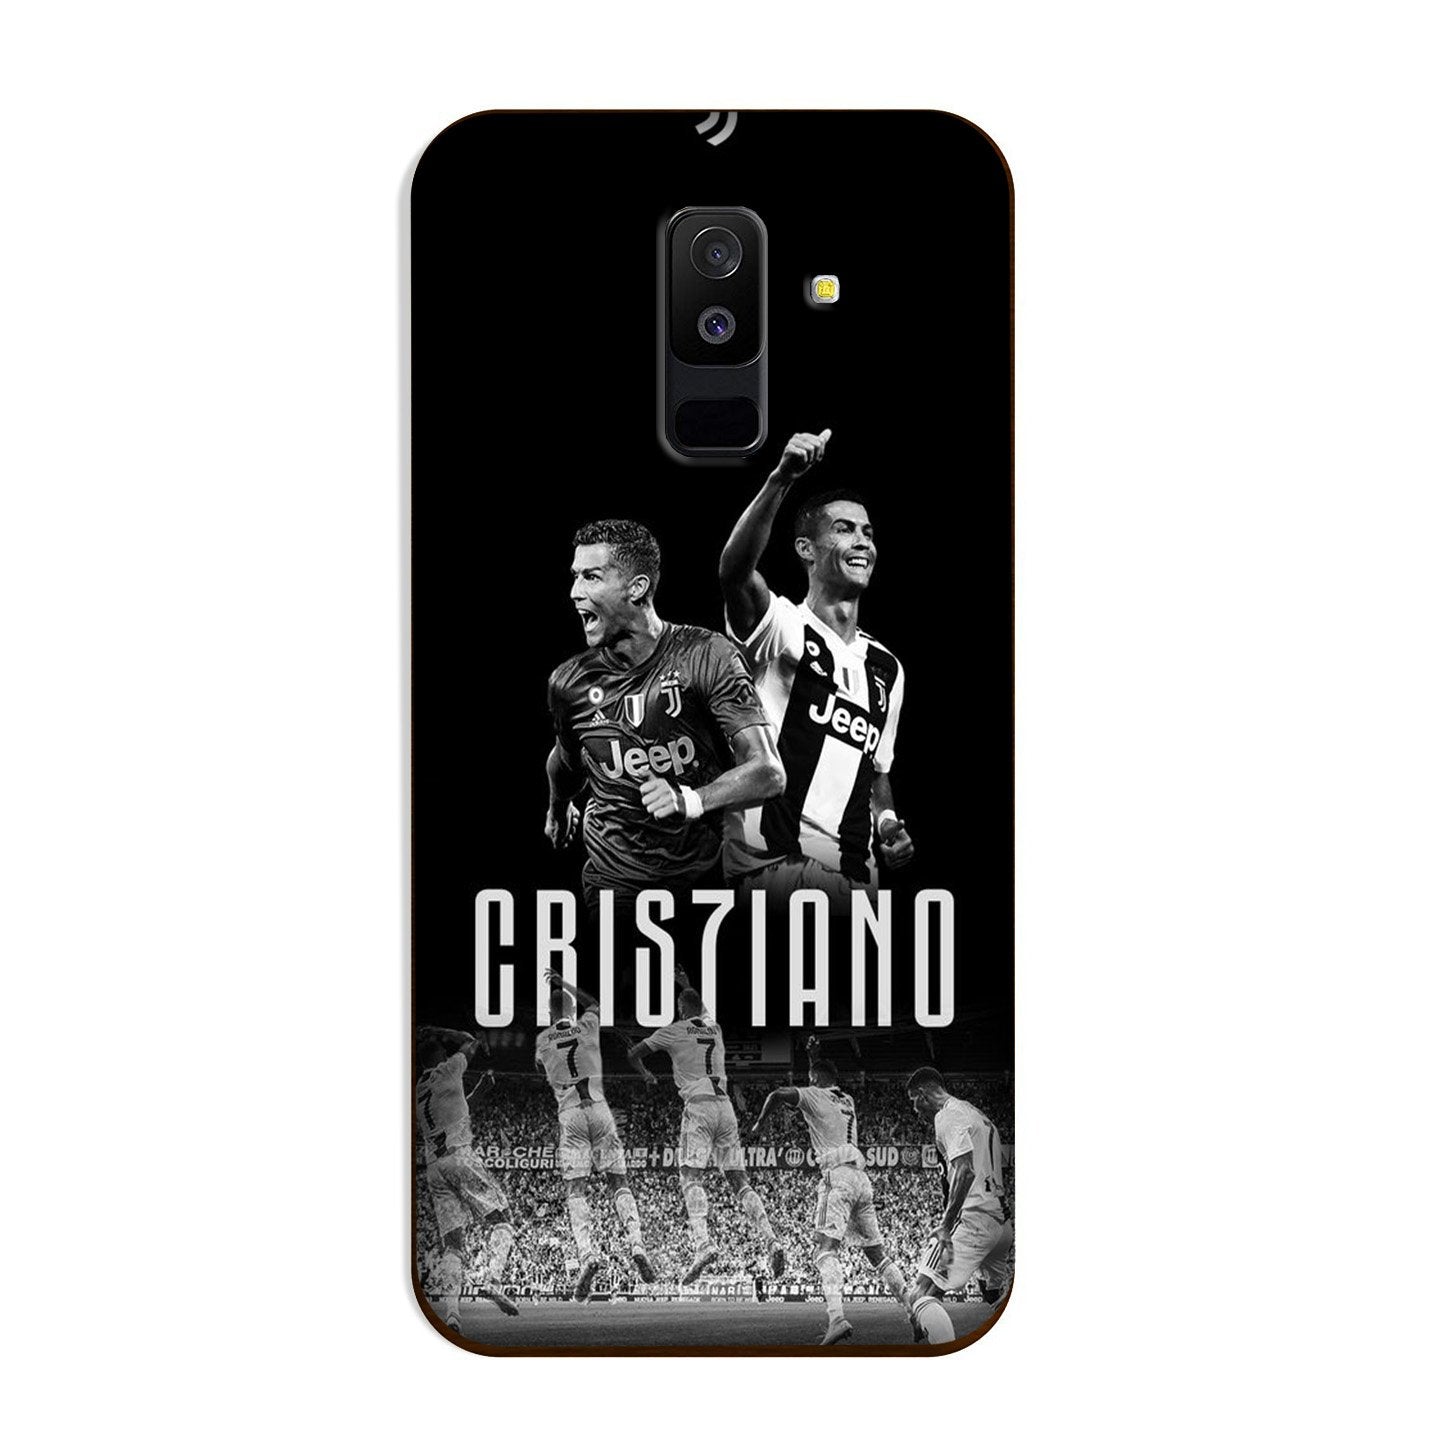 Cristiano Case for Galaxy A6 Plus  (Design - 165)